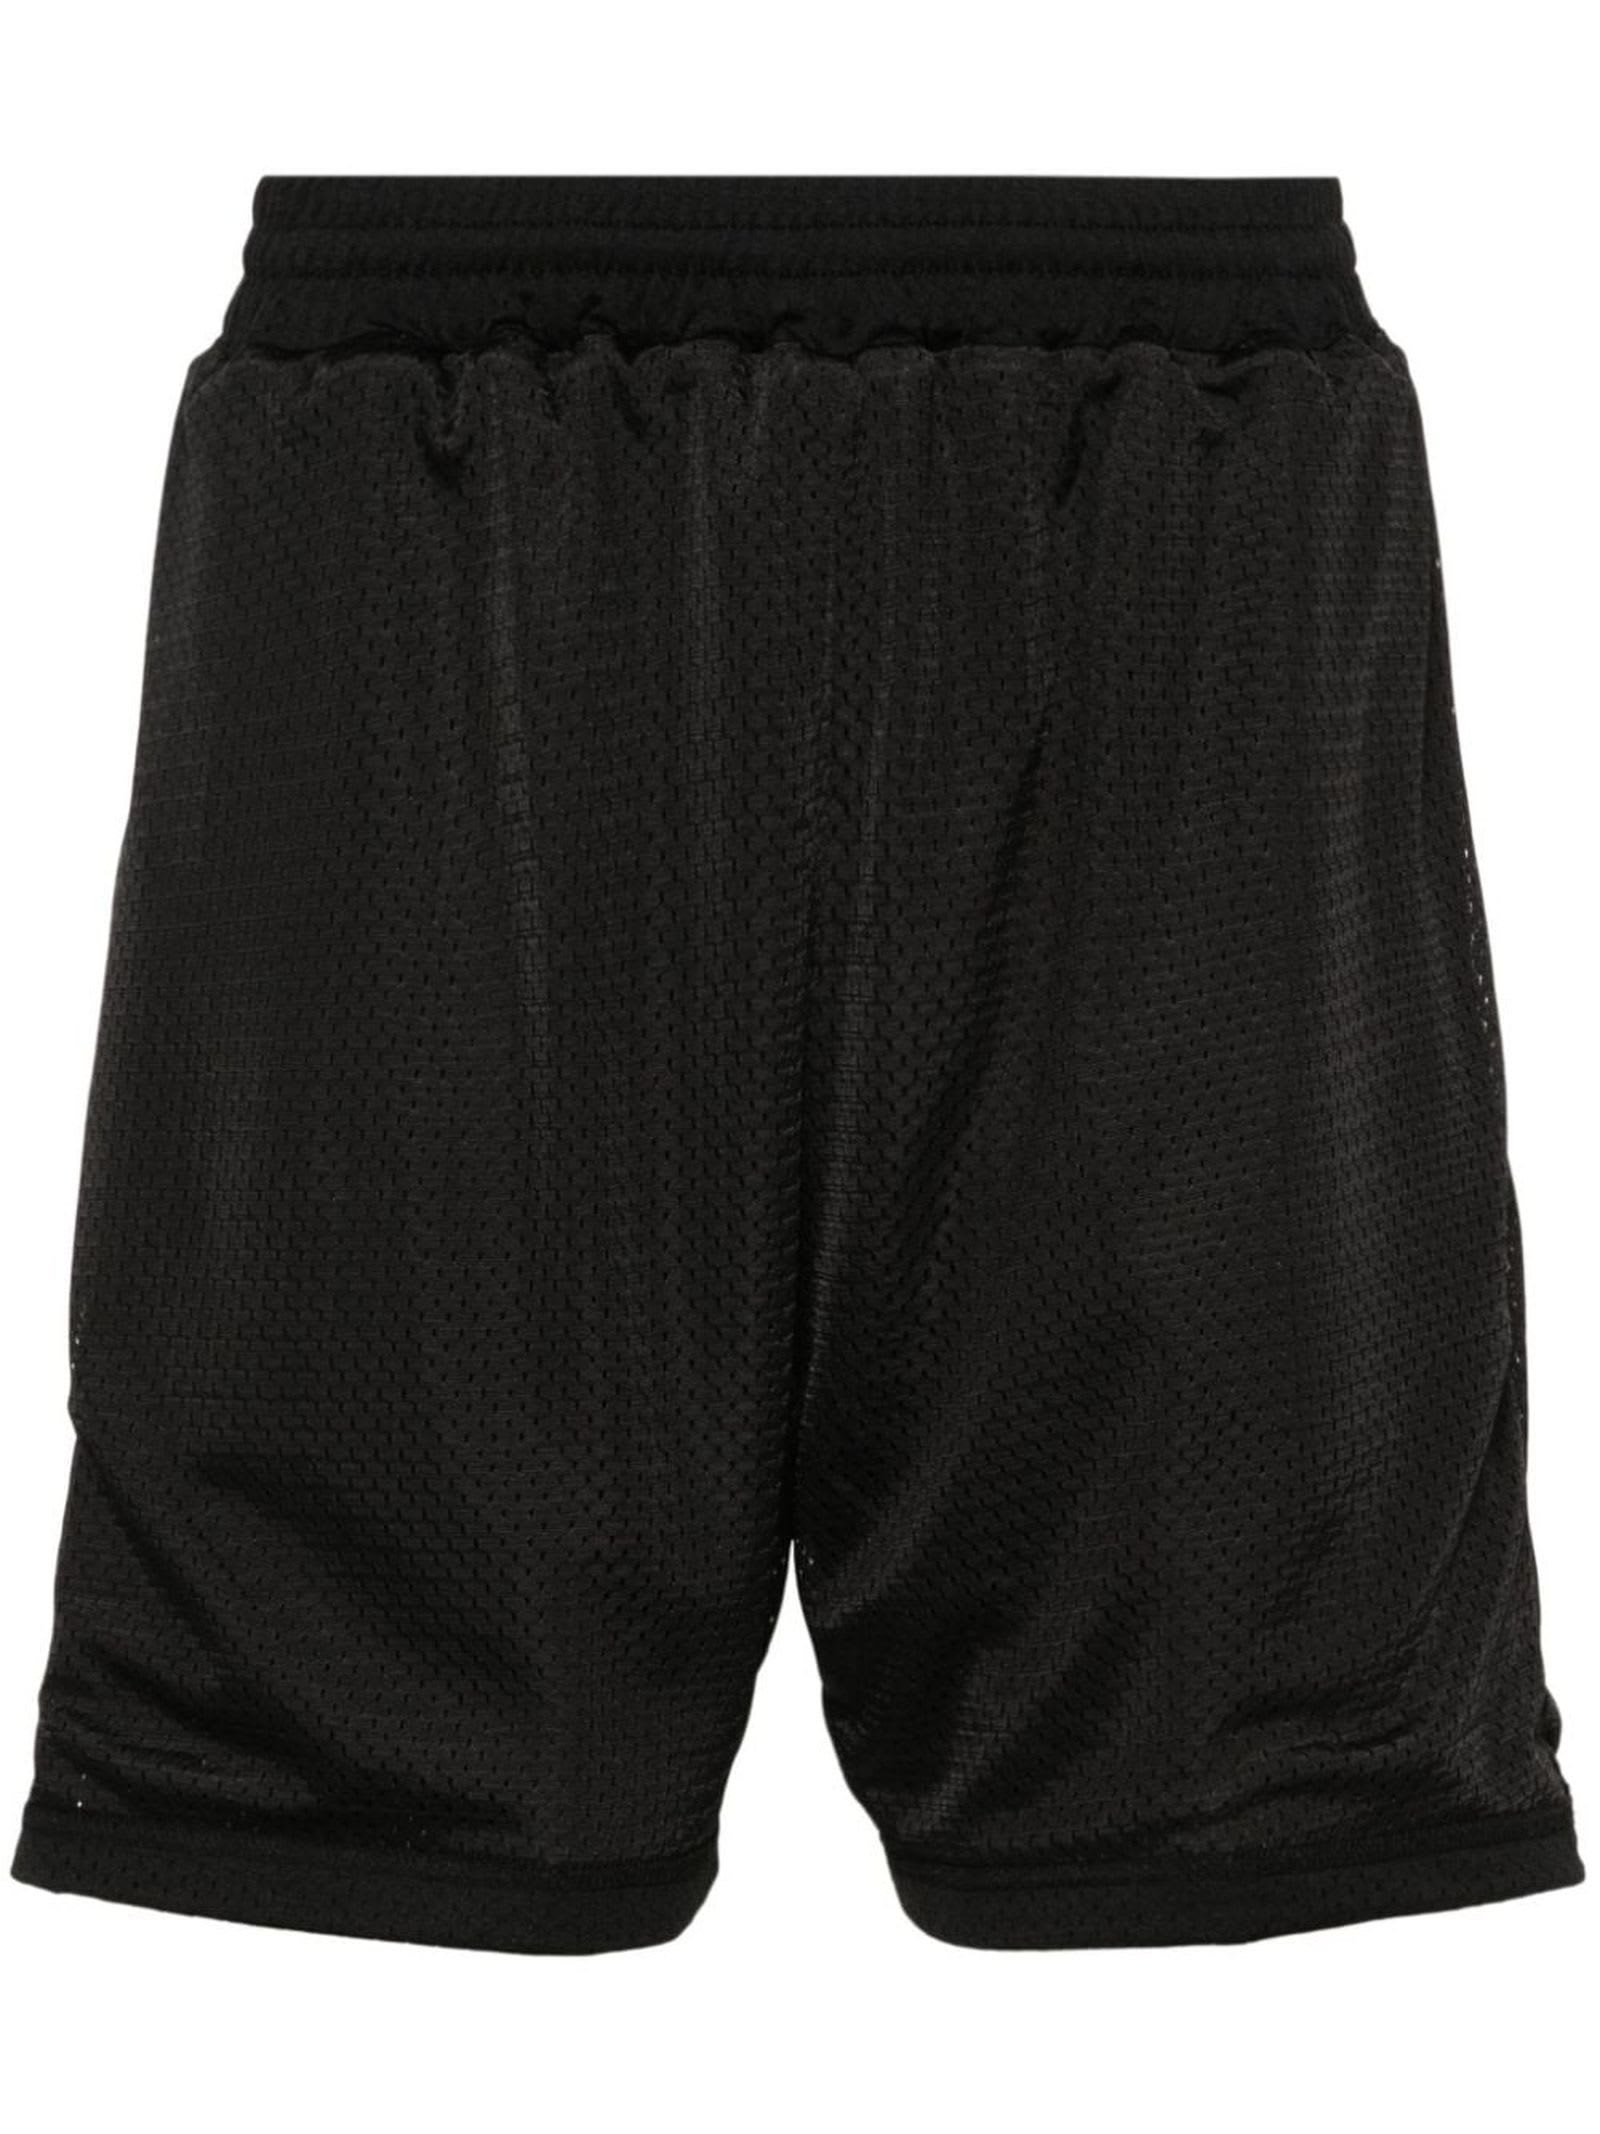 Black Shorts Shorts